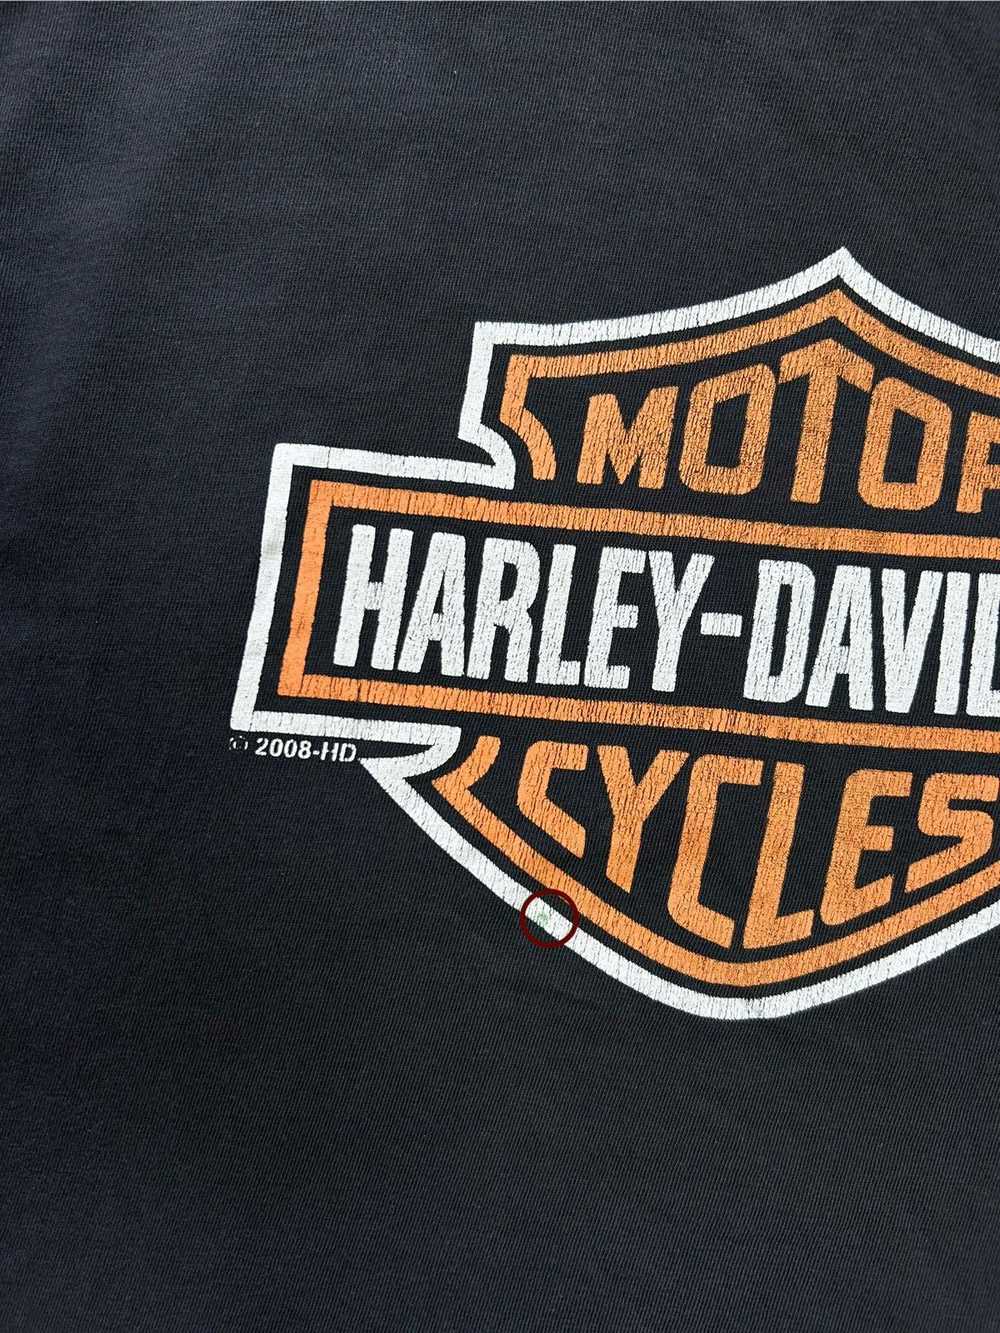 Band Tees × Harley Davidson × Vintage Vintage 200… - image 11